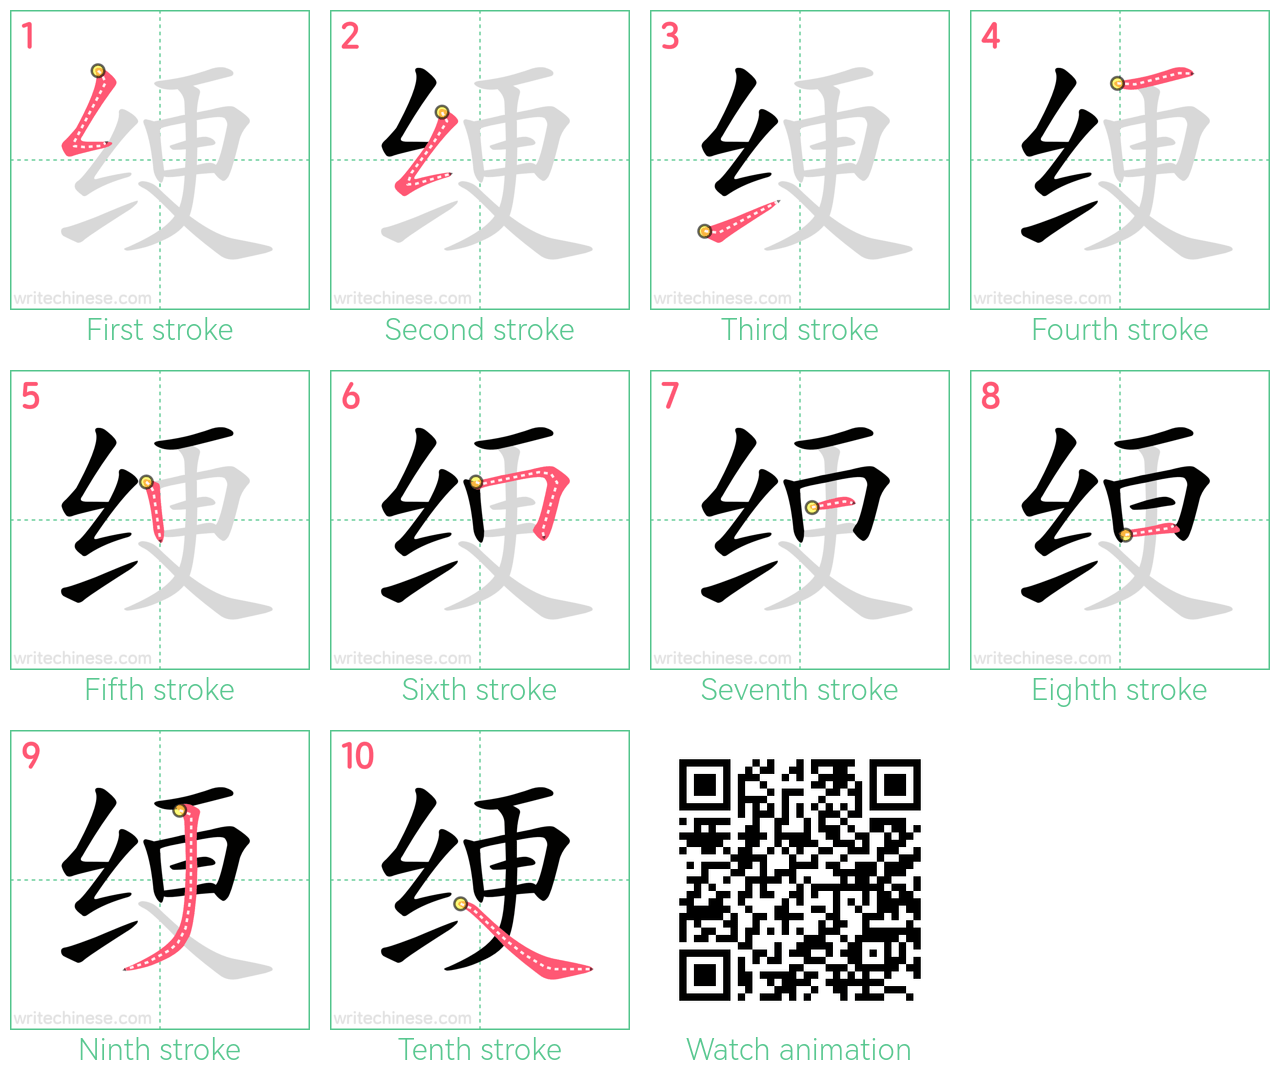 绠 step-by-step stroke order diagrams